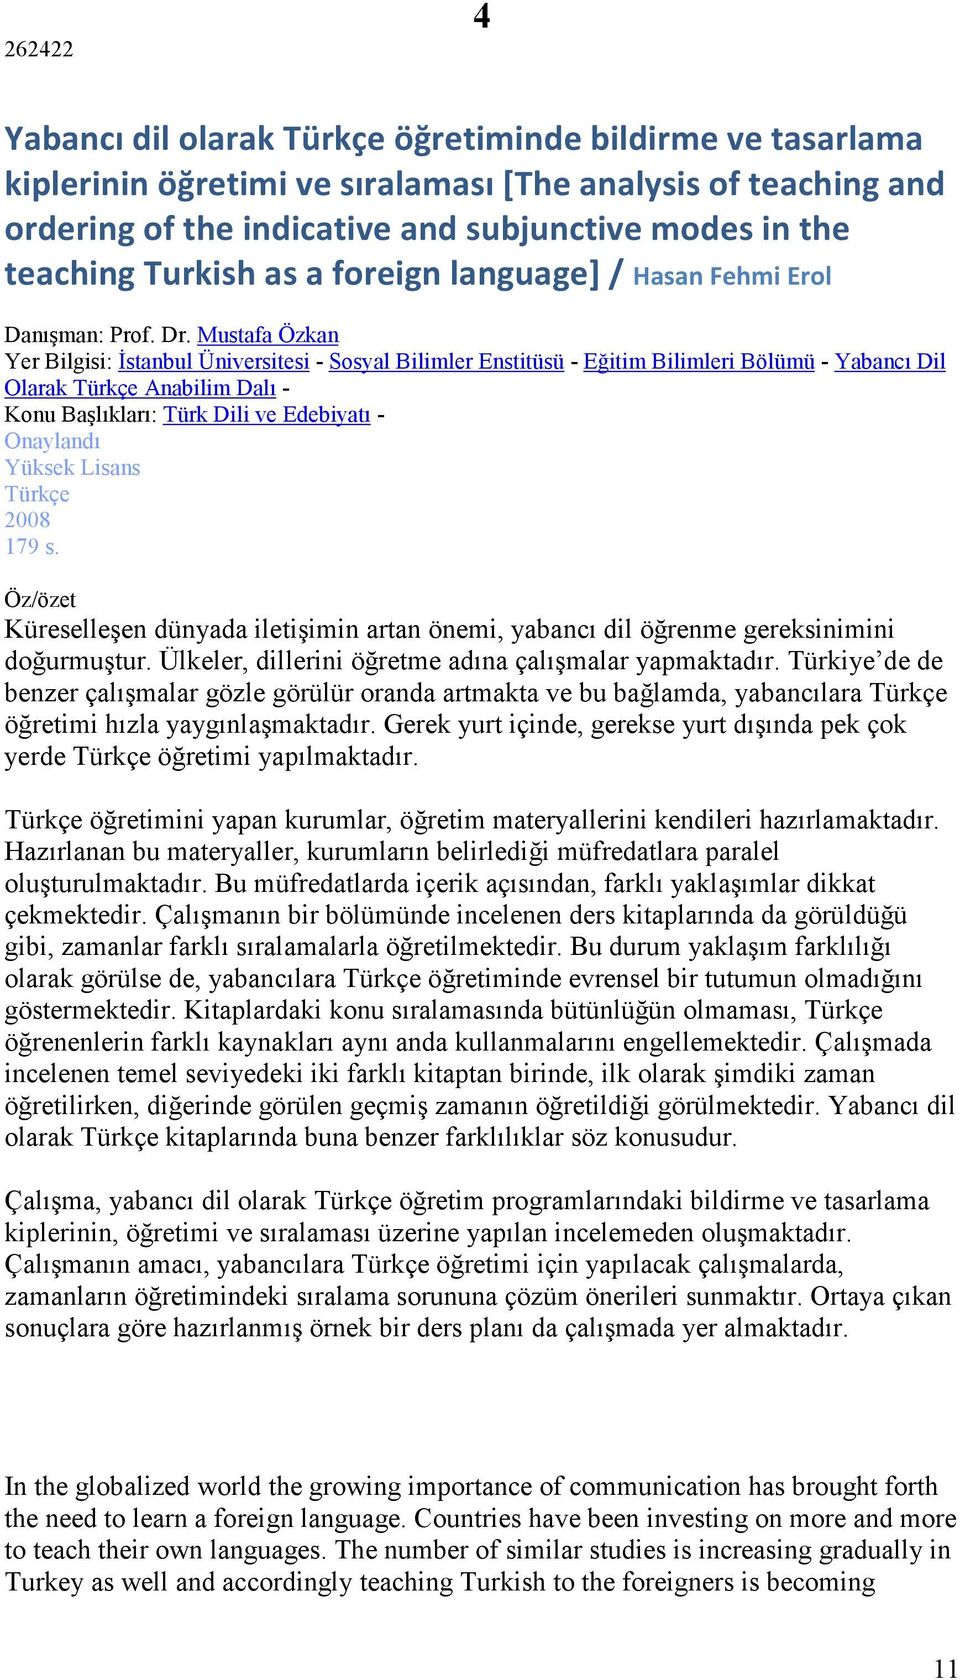 Mustafa Özkan Yer Bilgisi: İstanbul Üniversitesi - Sosyal Bilimler Enstitüsü - Eğitim Bilimleri Bölümü - Yabancı Dil Olarak Türkçe Anabilim Dalı - Konu Başlıkları: Türk Dili ve Edebiyatı - Onaylandı